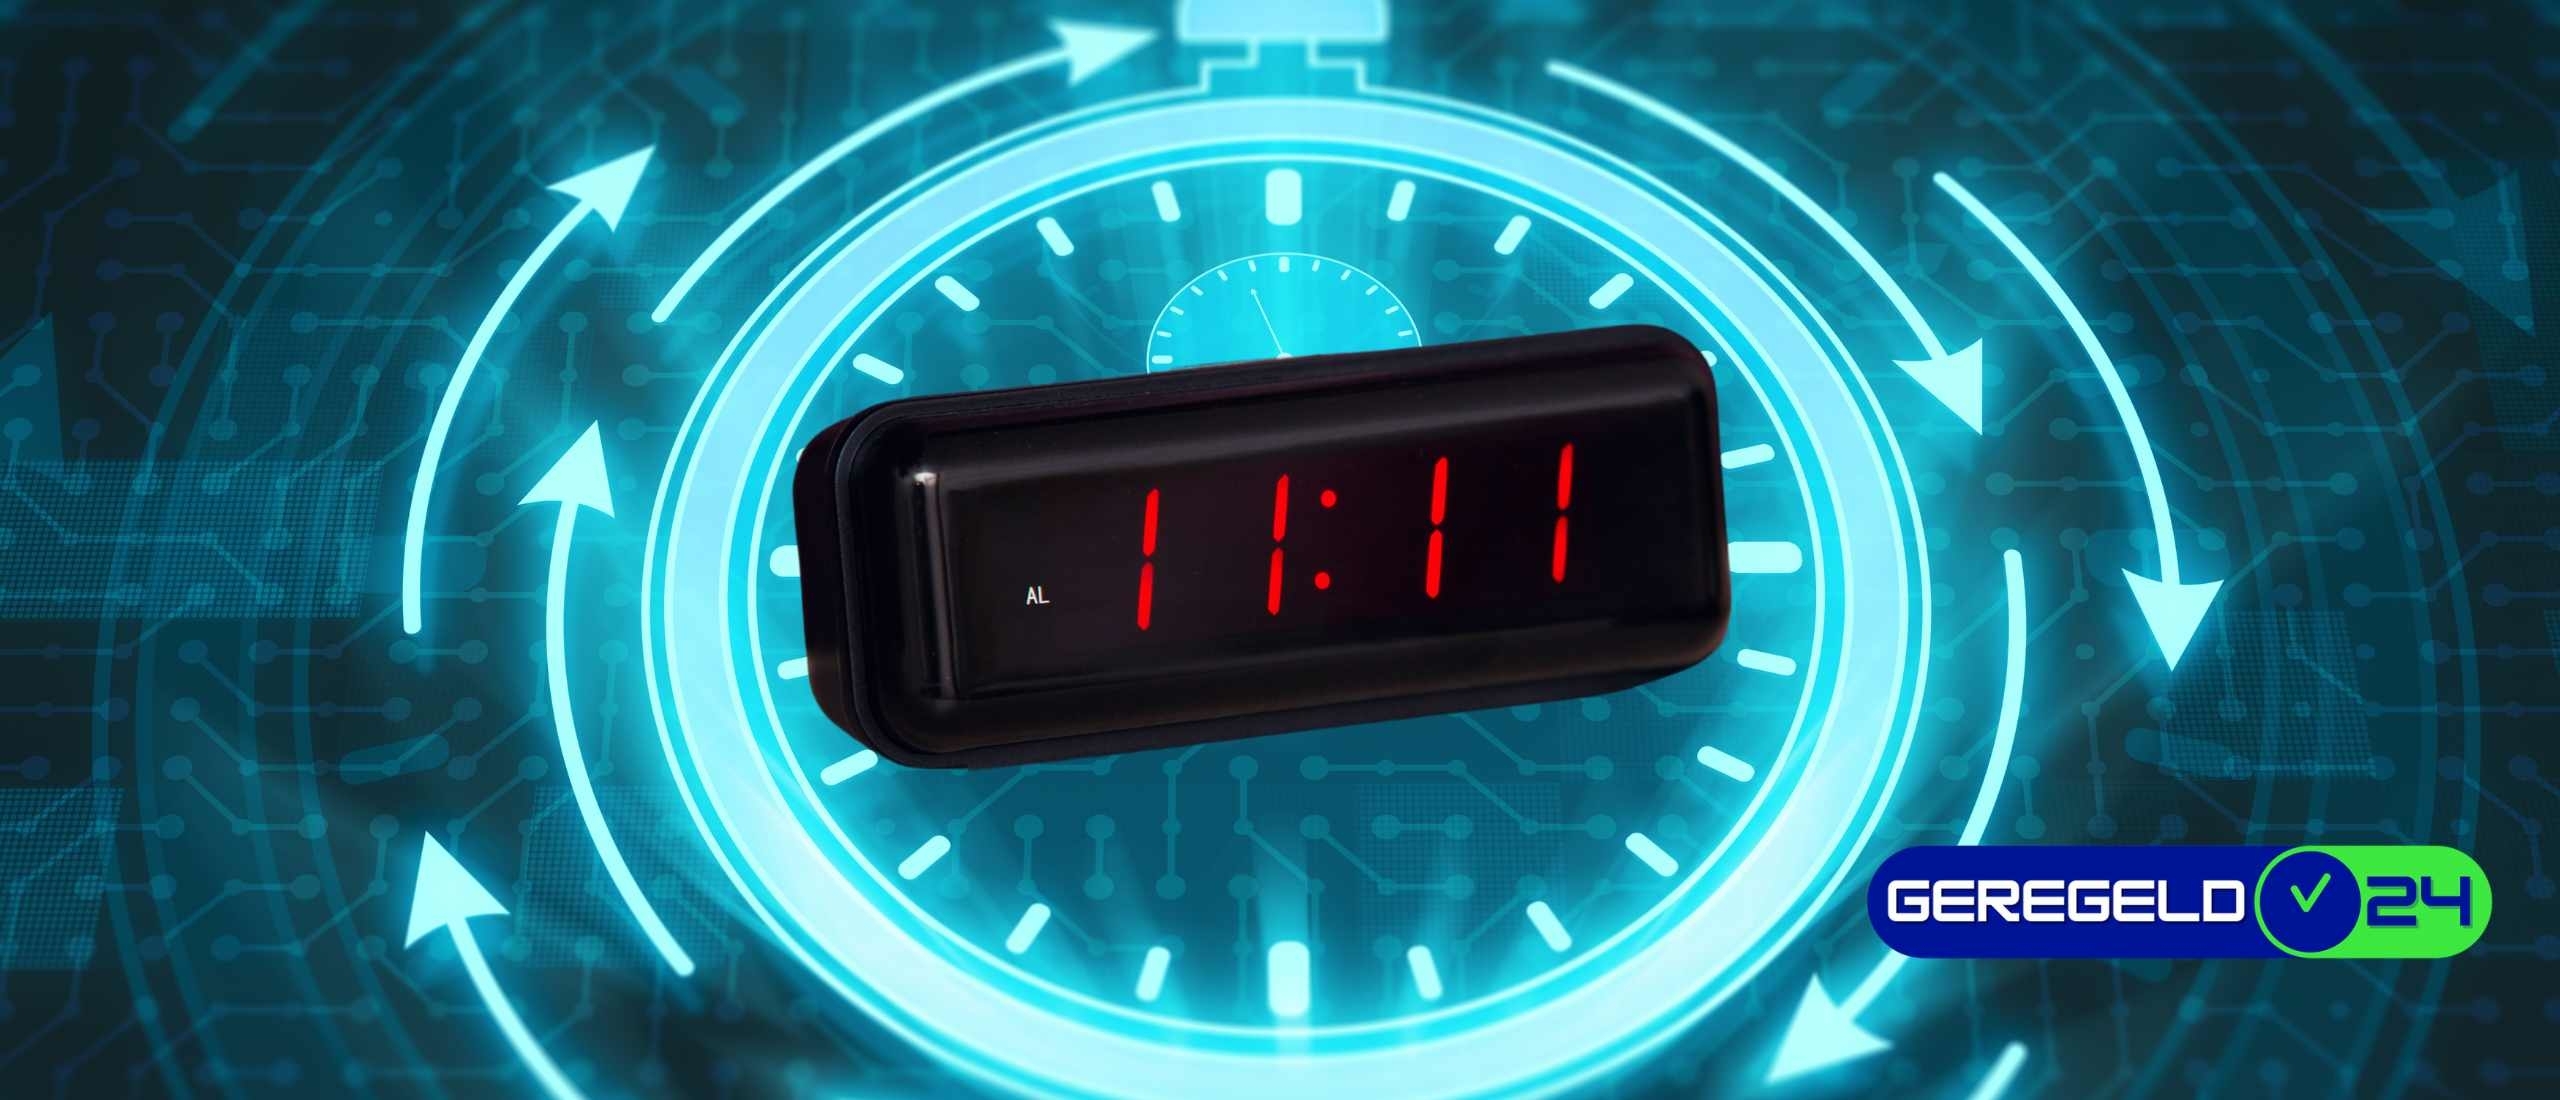 Wat betekent het getal 11:11 op de klok?